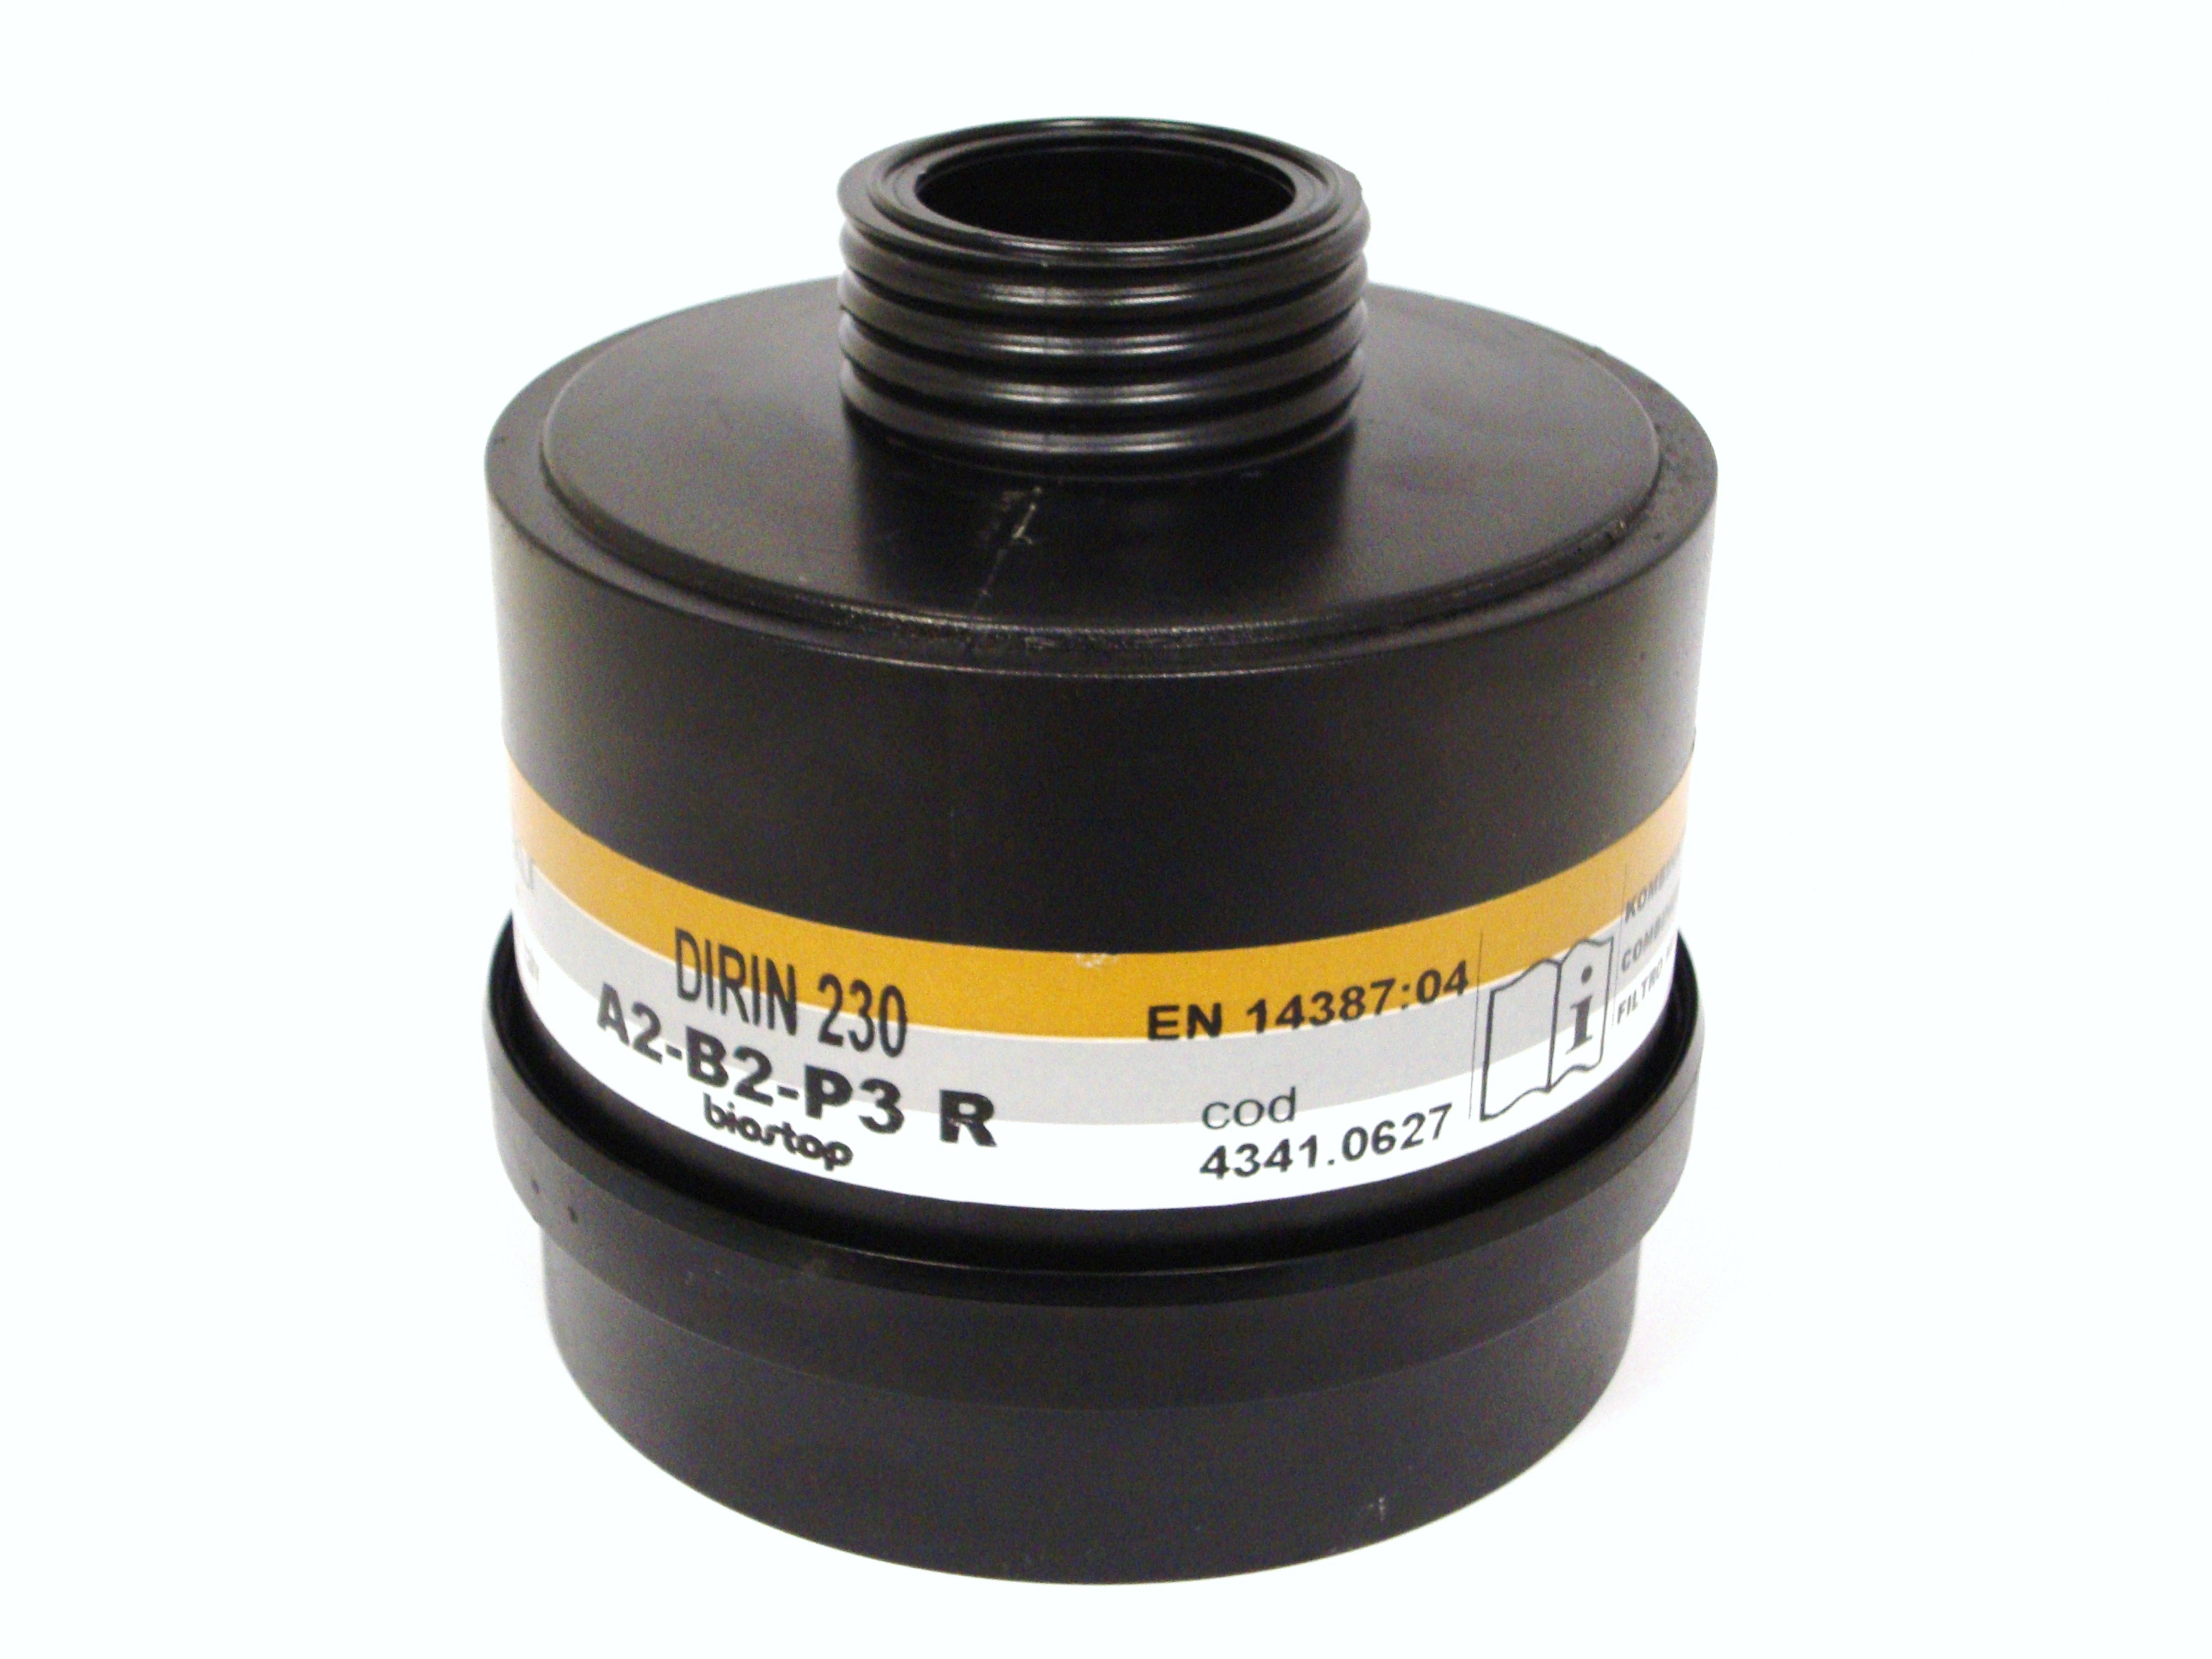 Mehrbereichs-Kombi-Filter DIRIN 230 A2 B2 - P3R D